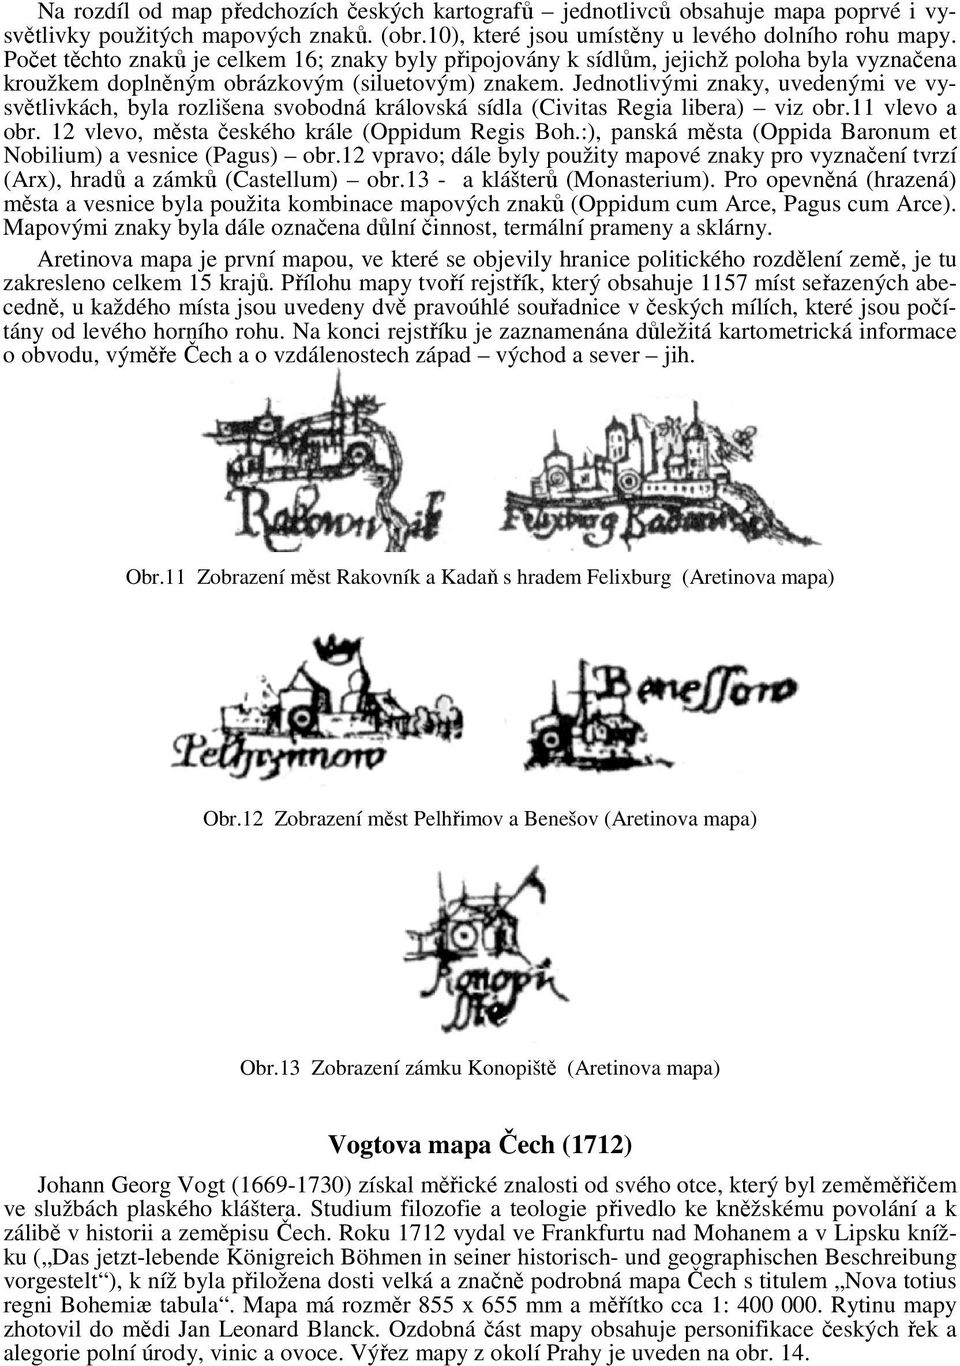 Jednotlivými znaky, uvedenými ve vysvětlivkách, byla rozlišena svobodná královská sídla (Civitas Regia libera) viz obr.11 vlevo a obr. 12 vlevo, města českého krále (Oppidum Regis Boh.